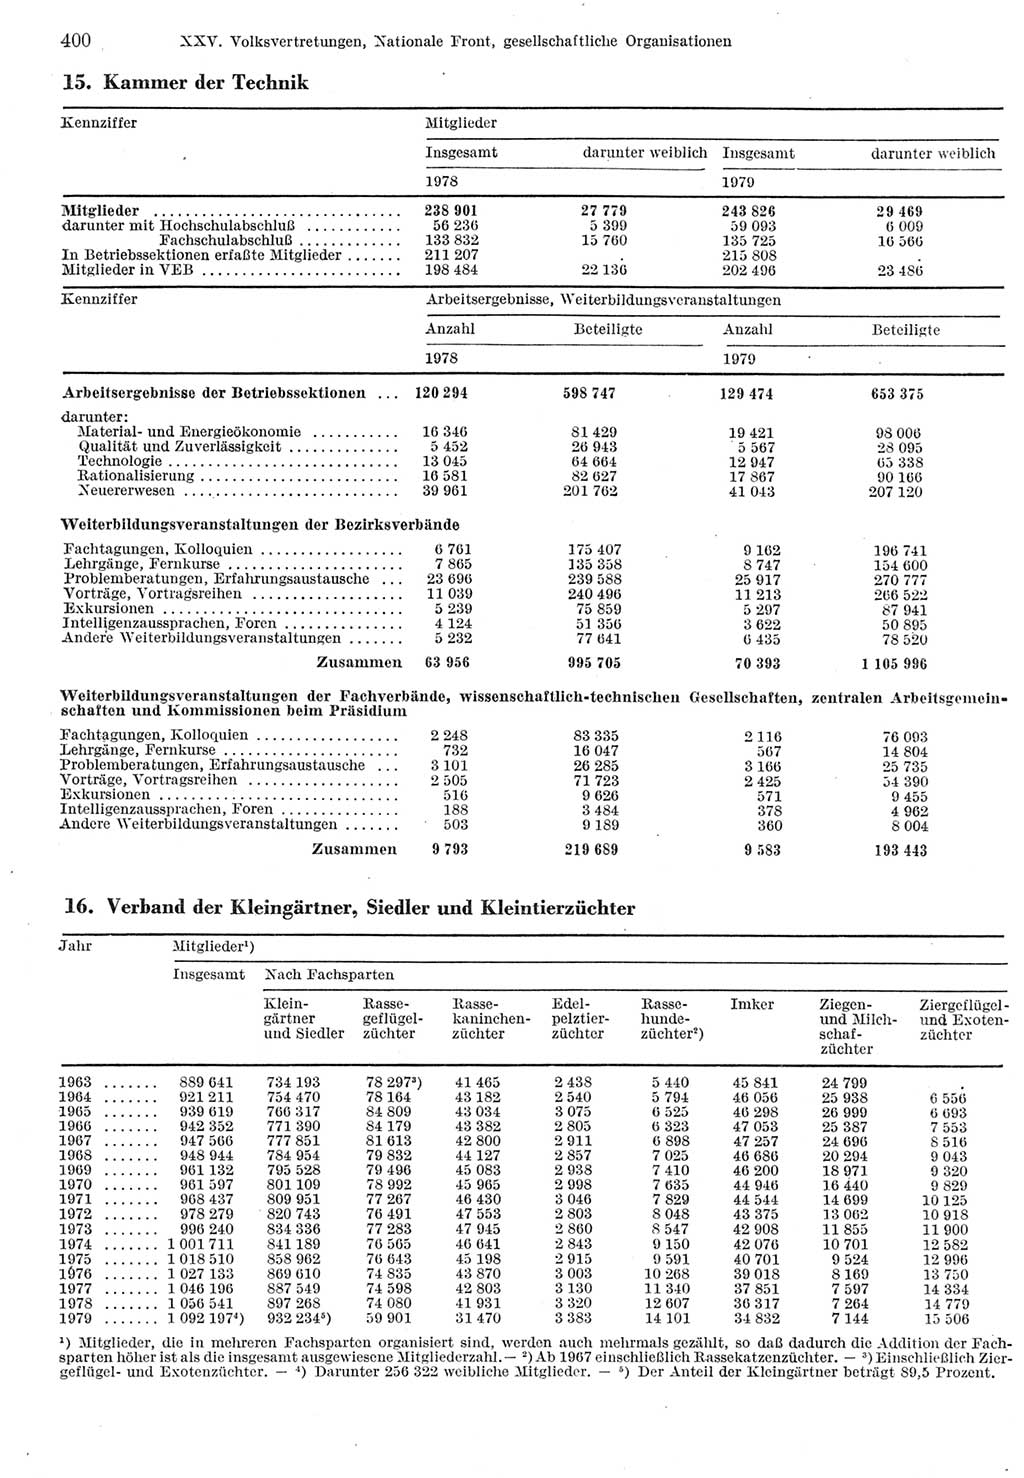 Statistisches Jahrbuch der Deutschen Demokratischen Republik (DDR) 1980, Seite 400 (Stat. Jb. DDR 1980, S. 400)